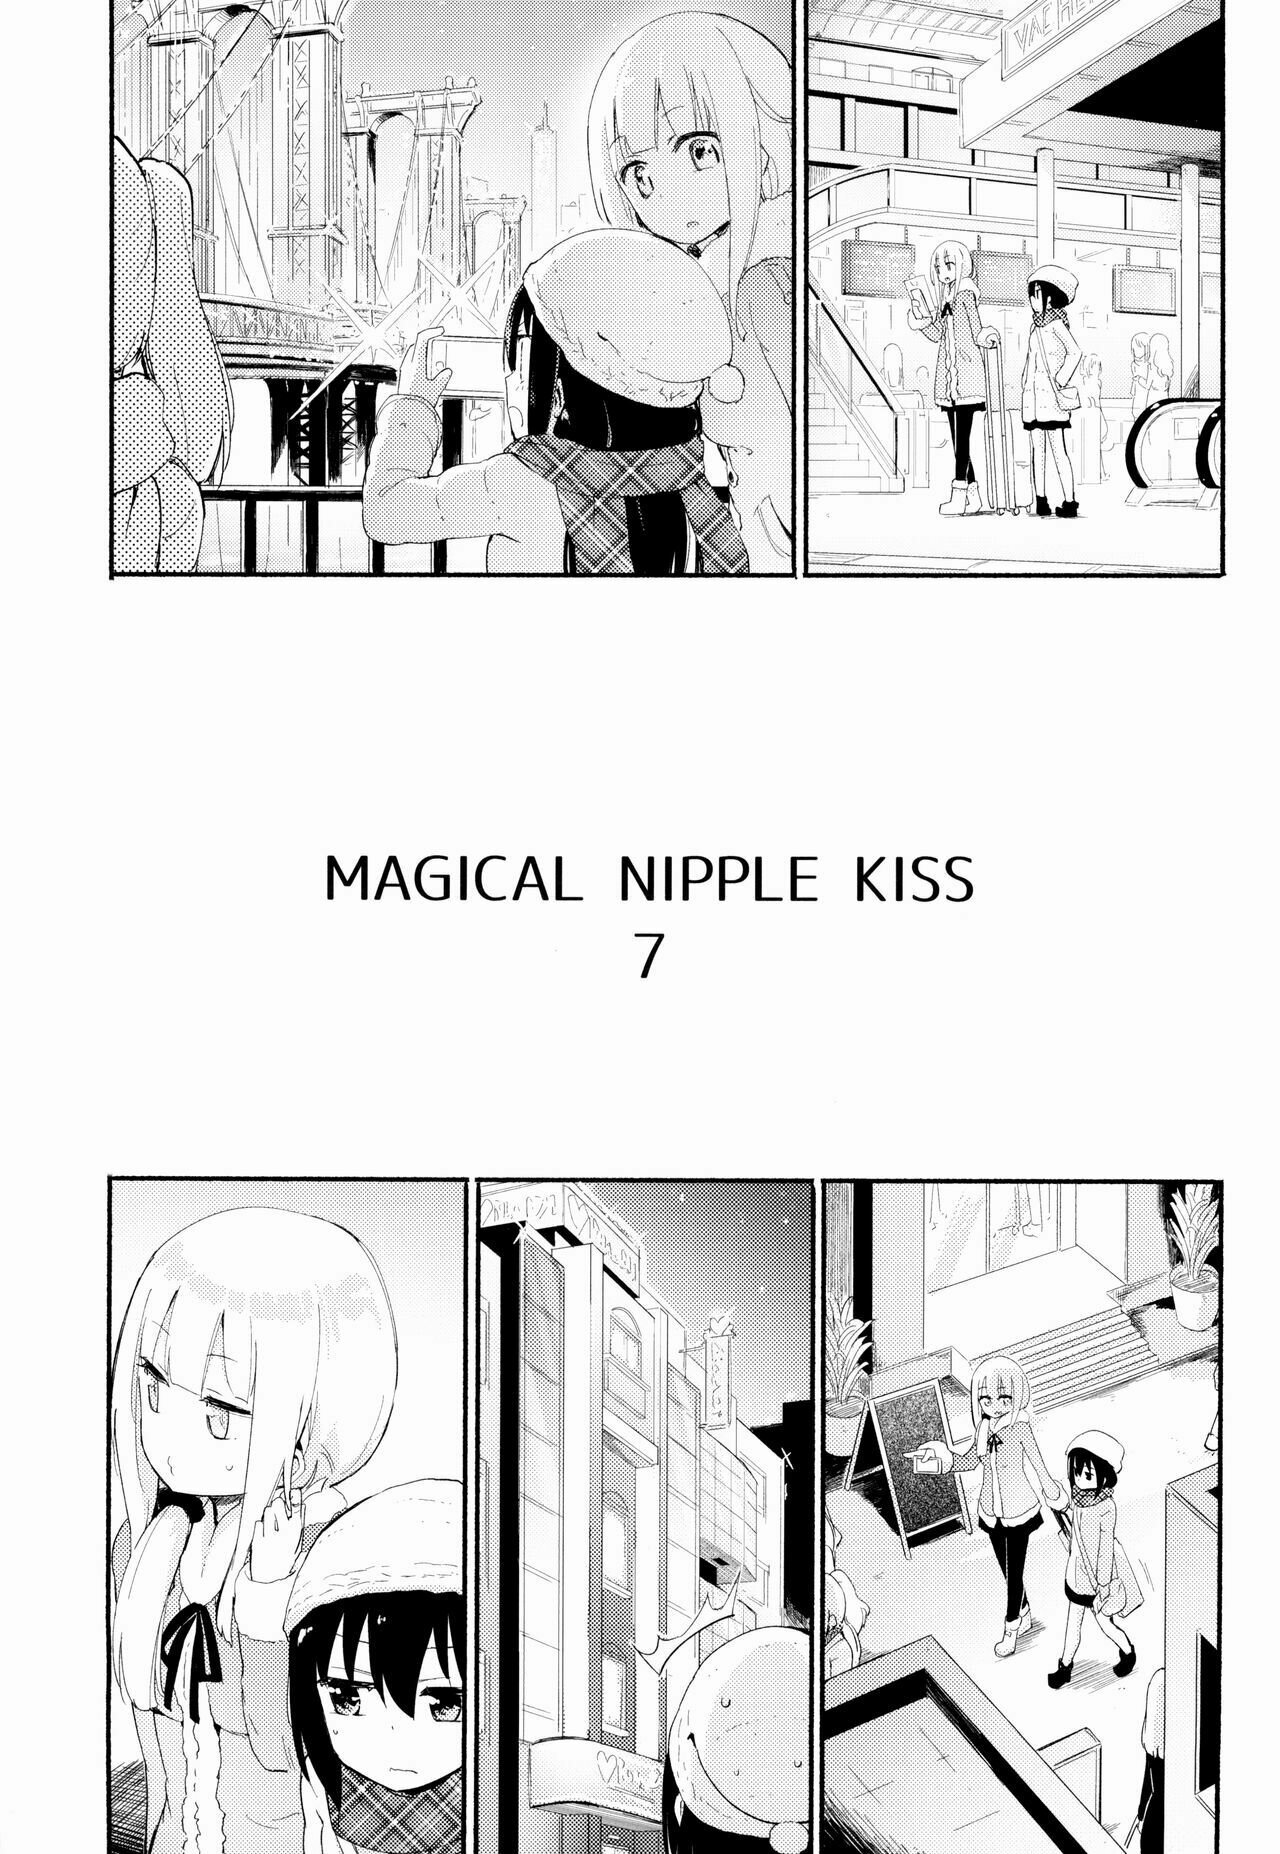 MAGICAL NIPPLE KISS 7 - 1